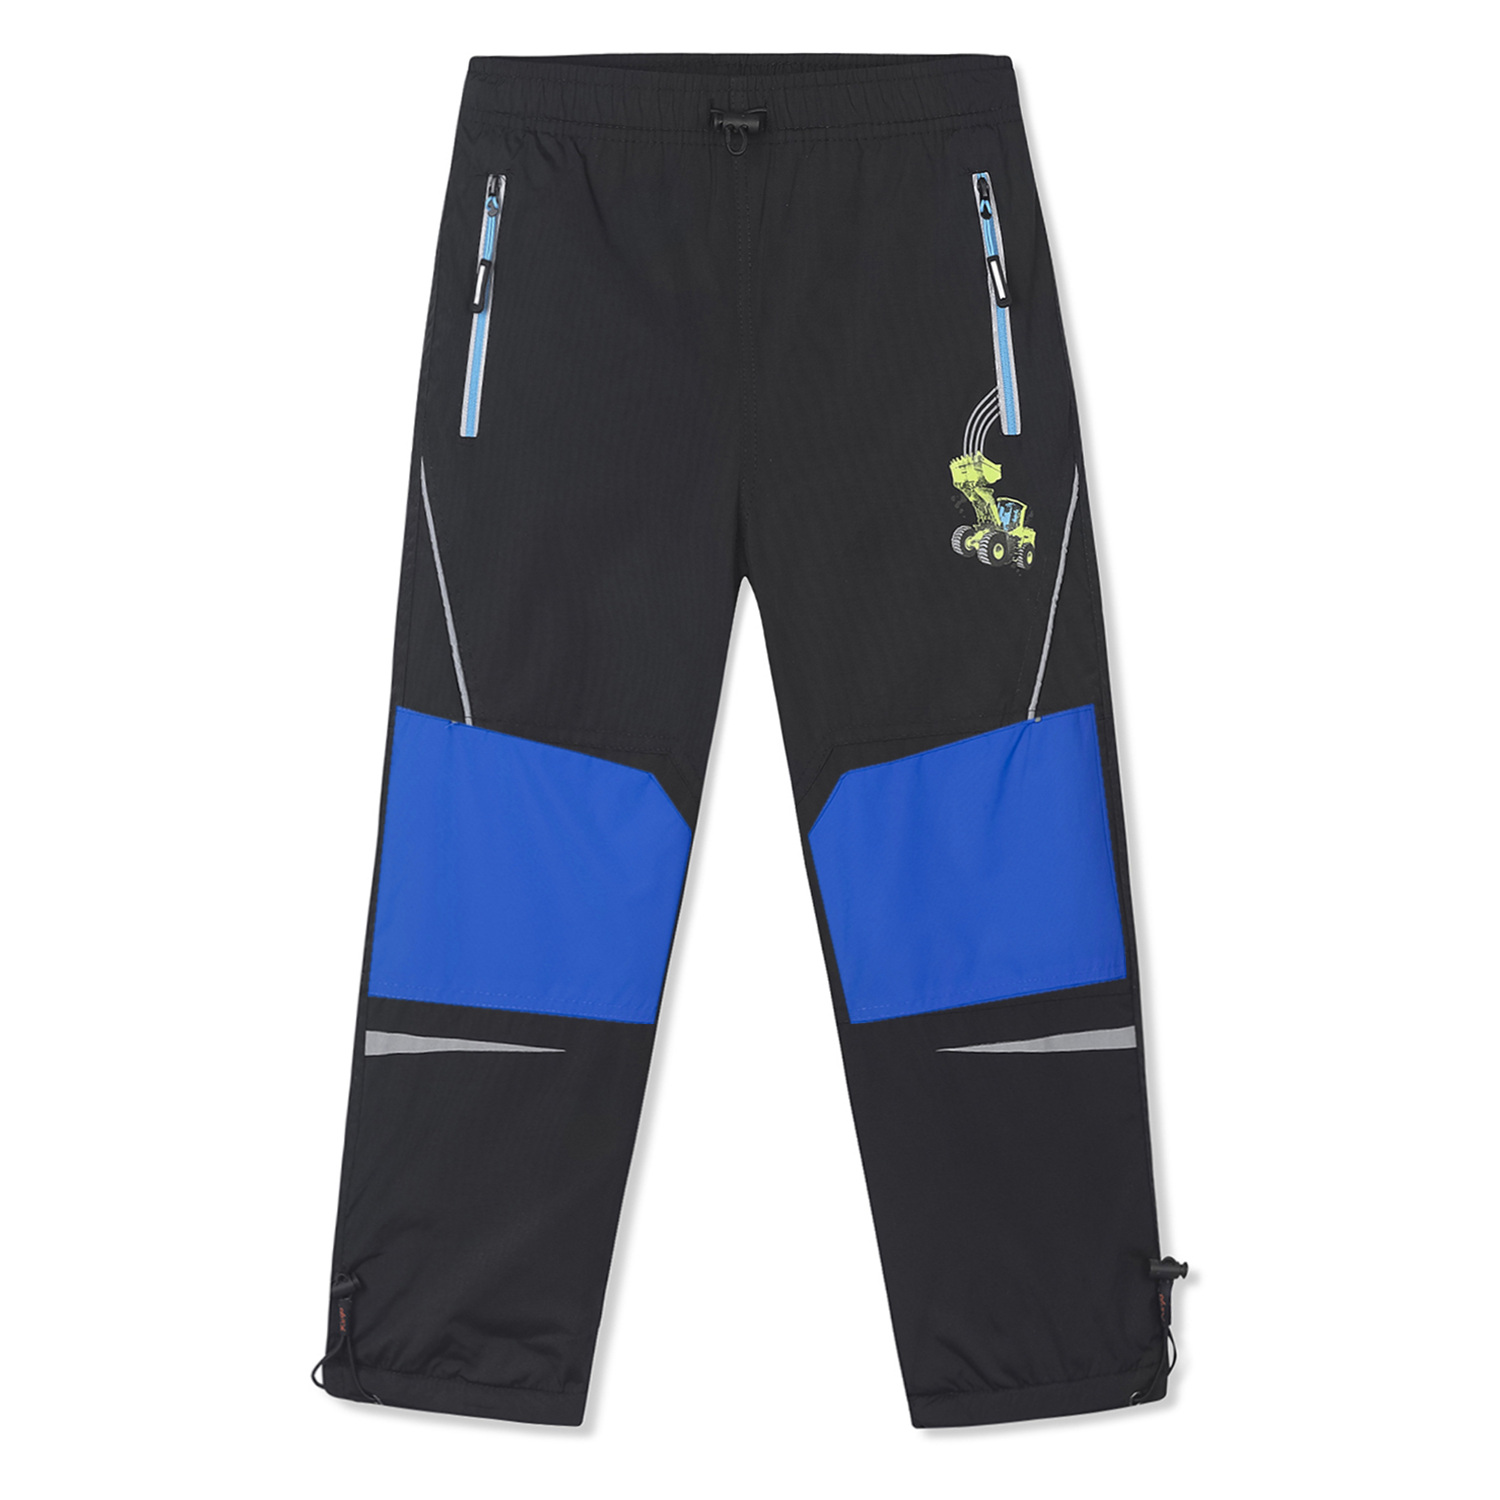 Chlapecké šusťákové kalhoty, zateplené - KUGO DK7092m, tmavě modrá Barva: Modrá tmavě, Velikost: 98